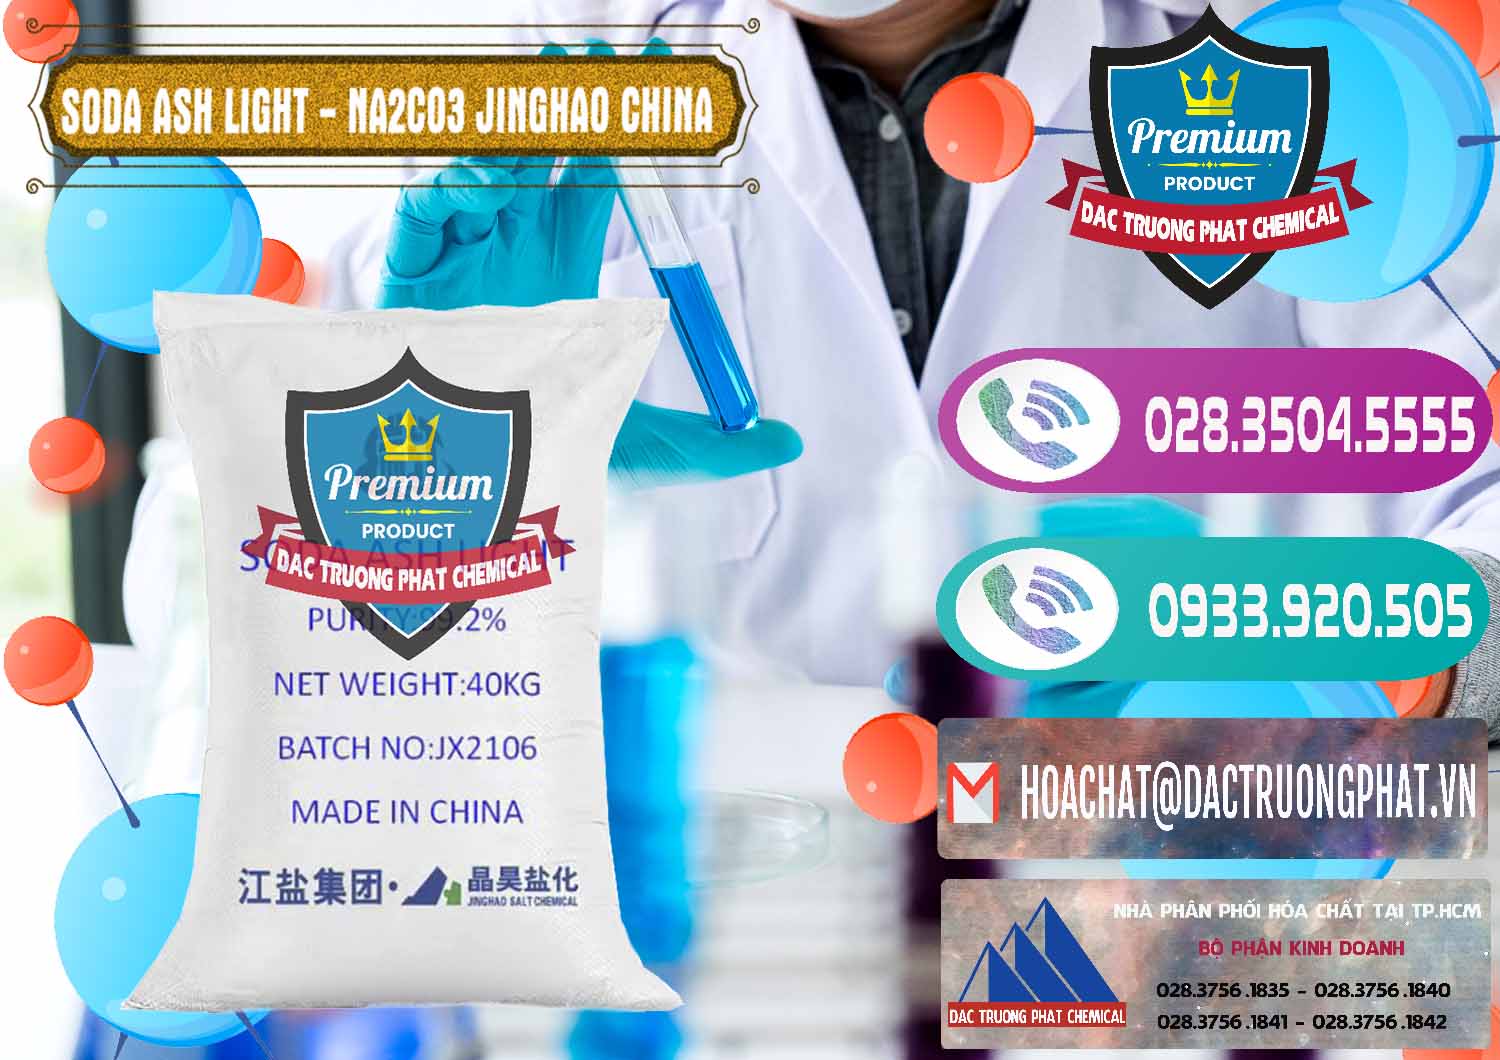 Nơi chuyên cung cấp & bán Soda Ash Light - NA2CO3 Jinghao Trung Quốc China - 0339 - Chuyên bán - cung cấp hóa chất tại TP.HCM - hoachatxulynuoc.com